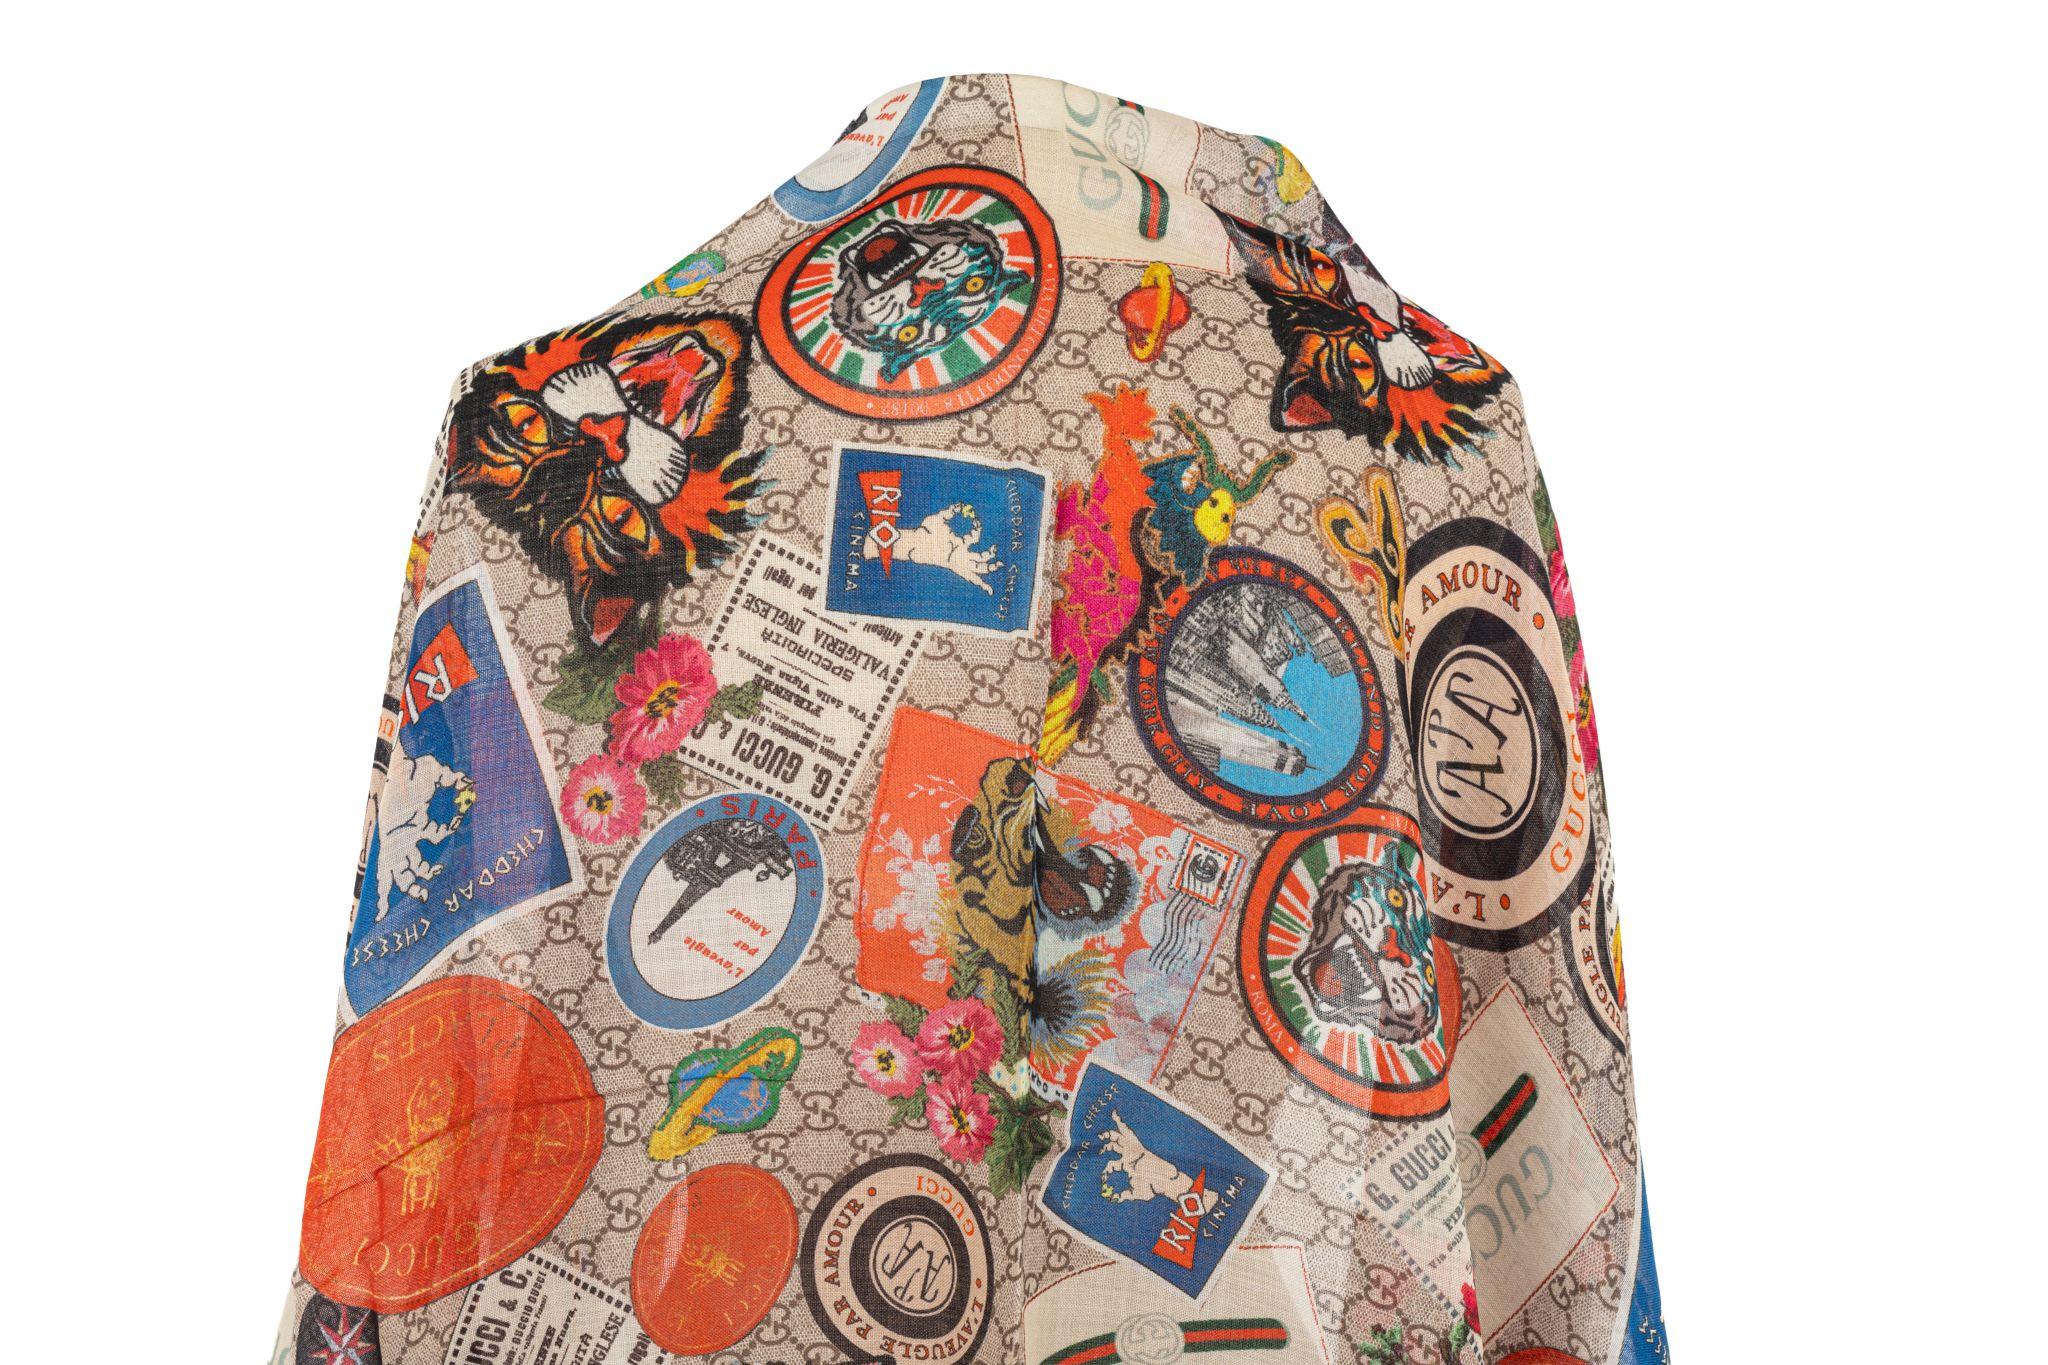 Gucci Beigefarbener Schal mit Patch-Print-Motiv. Das Stück zeigt verschiedene Reiseaufkleber auf dem Gucci-Leinwand. Es ist neu und wurde noch nie getragen.